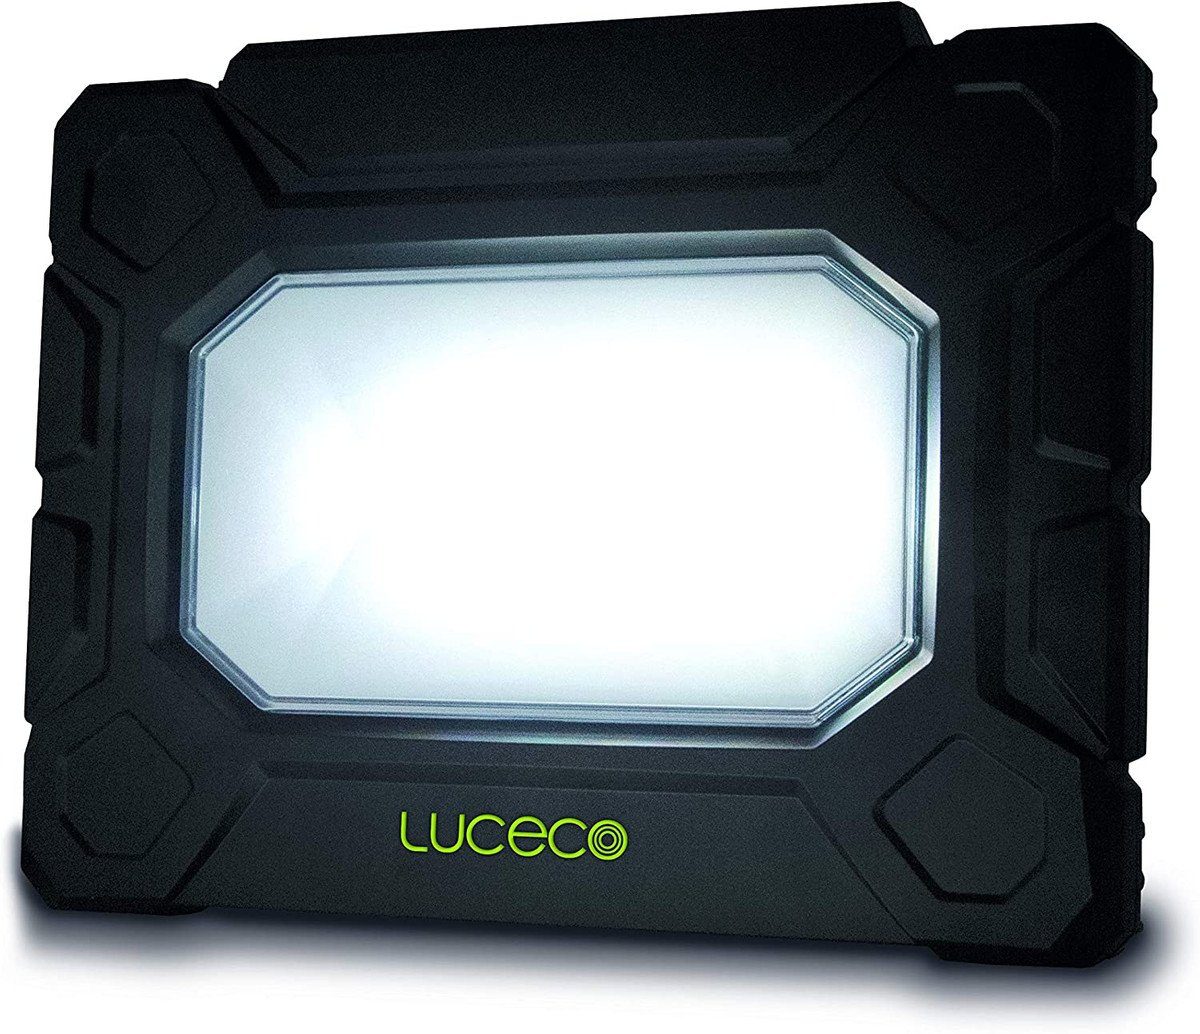 Hybrid Arbeitsleuchte Luceco Arbeitslicht Anschlusskabel Steckdosen LUCECO 5m 5200 Lumen 2